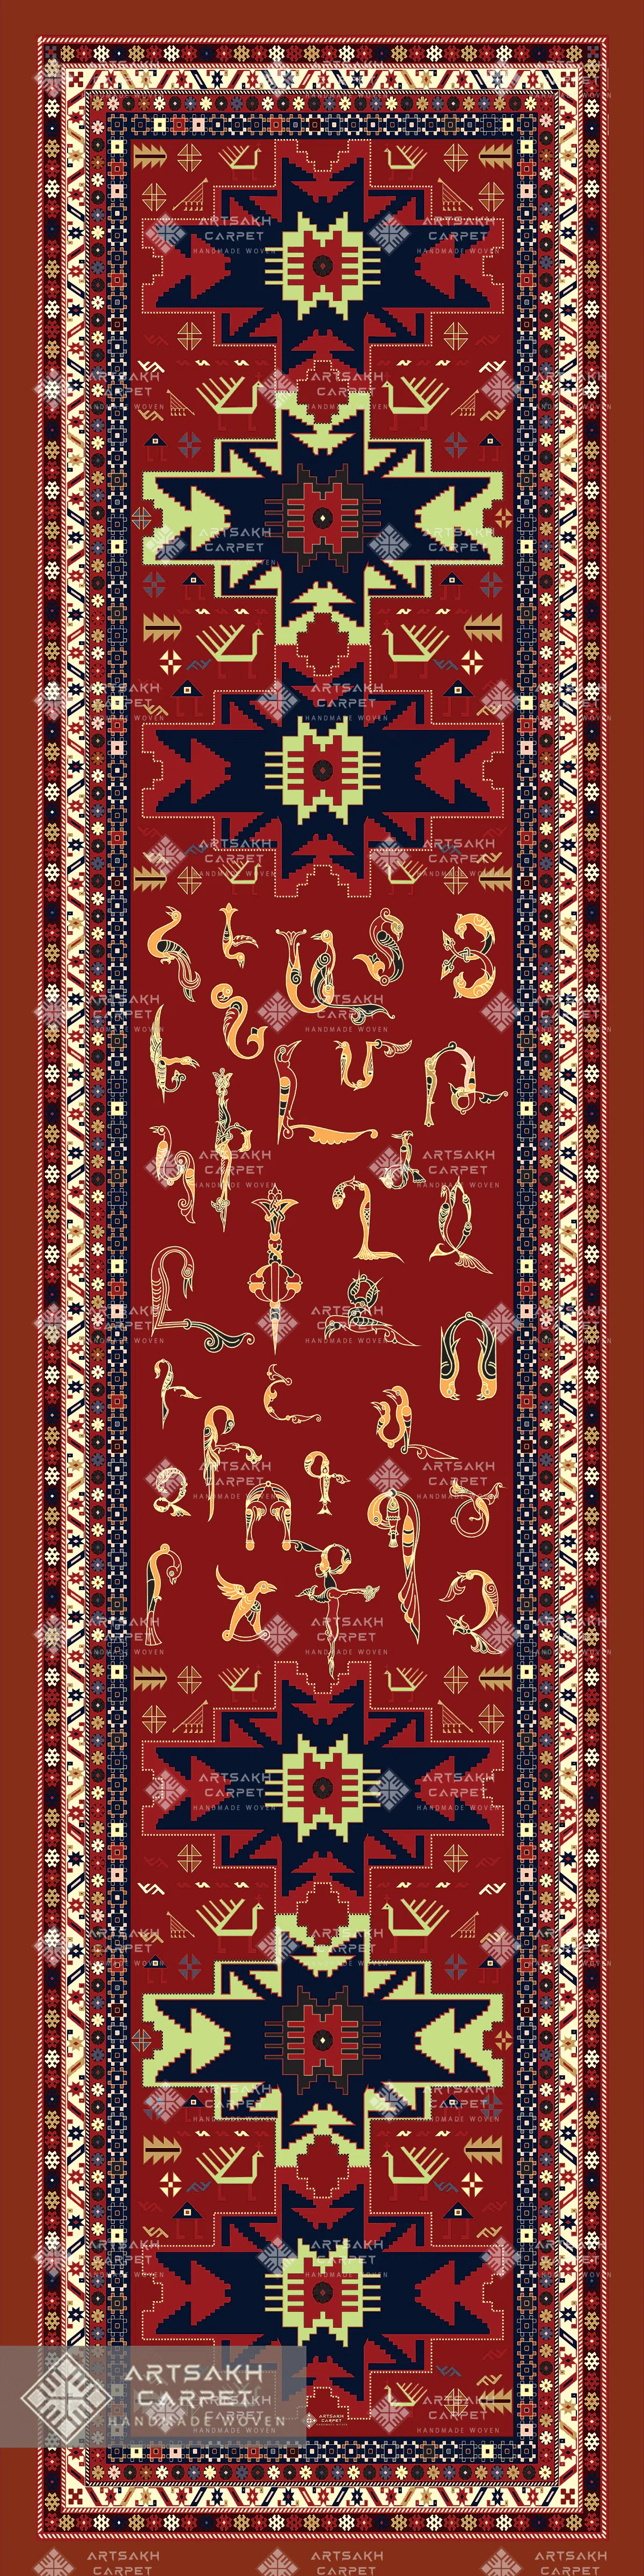 Silk scarf with Armenian ornaments